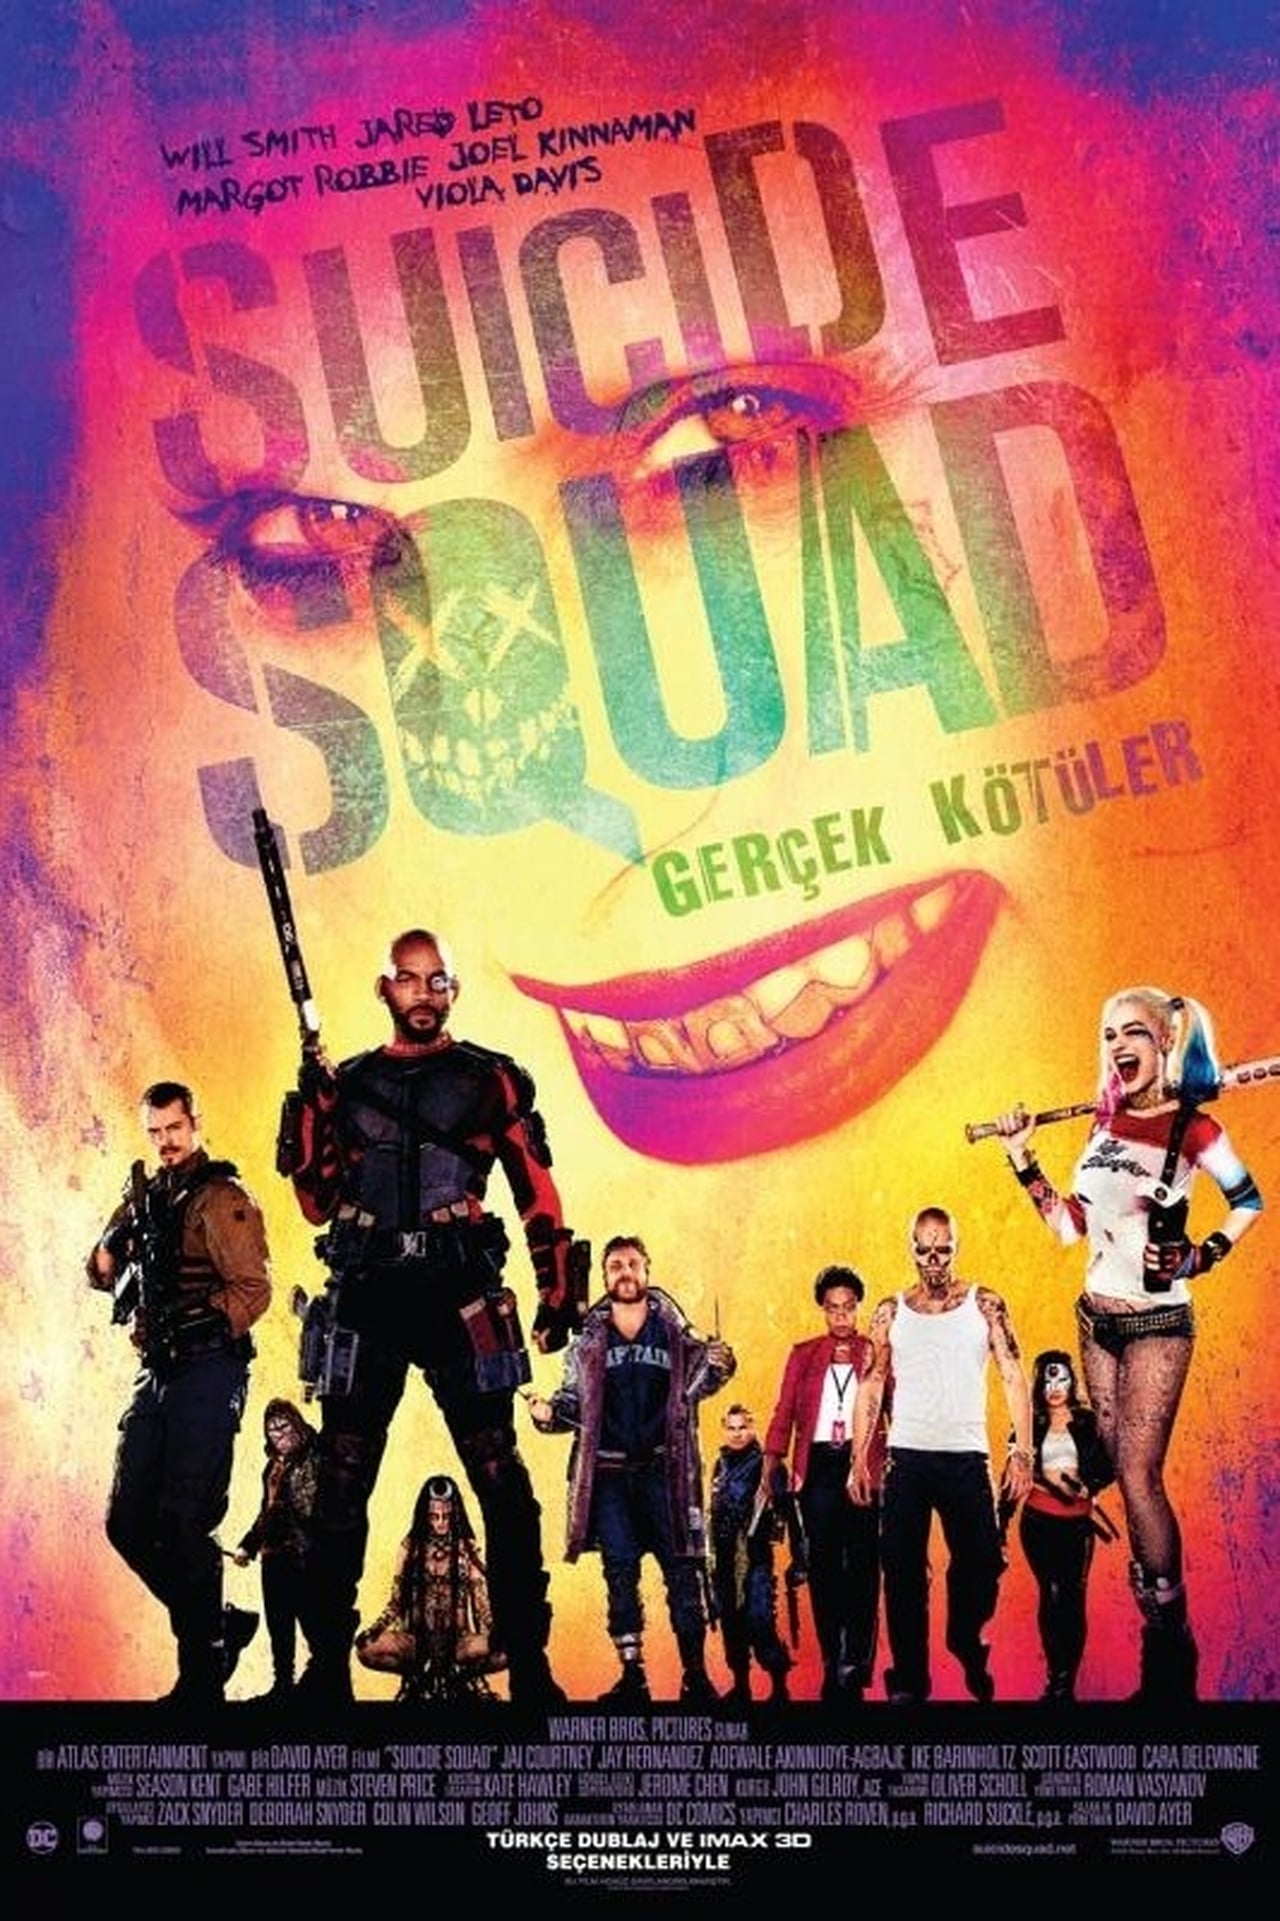 Suicide Squad (2016) Theatrical Cut 384Kbps 23.976Fps 48Khz 5.1Ch iTunes Turkish Audio TAC